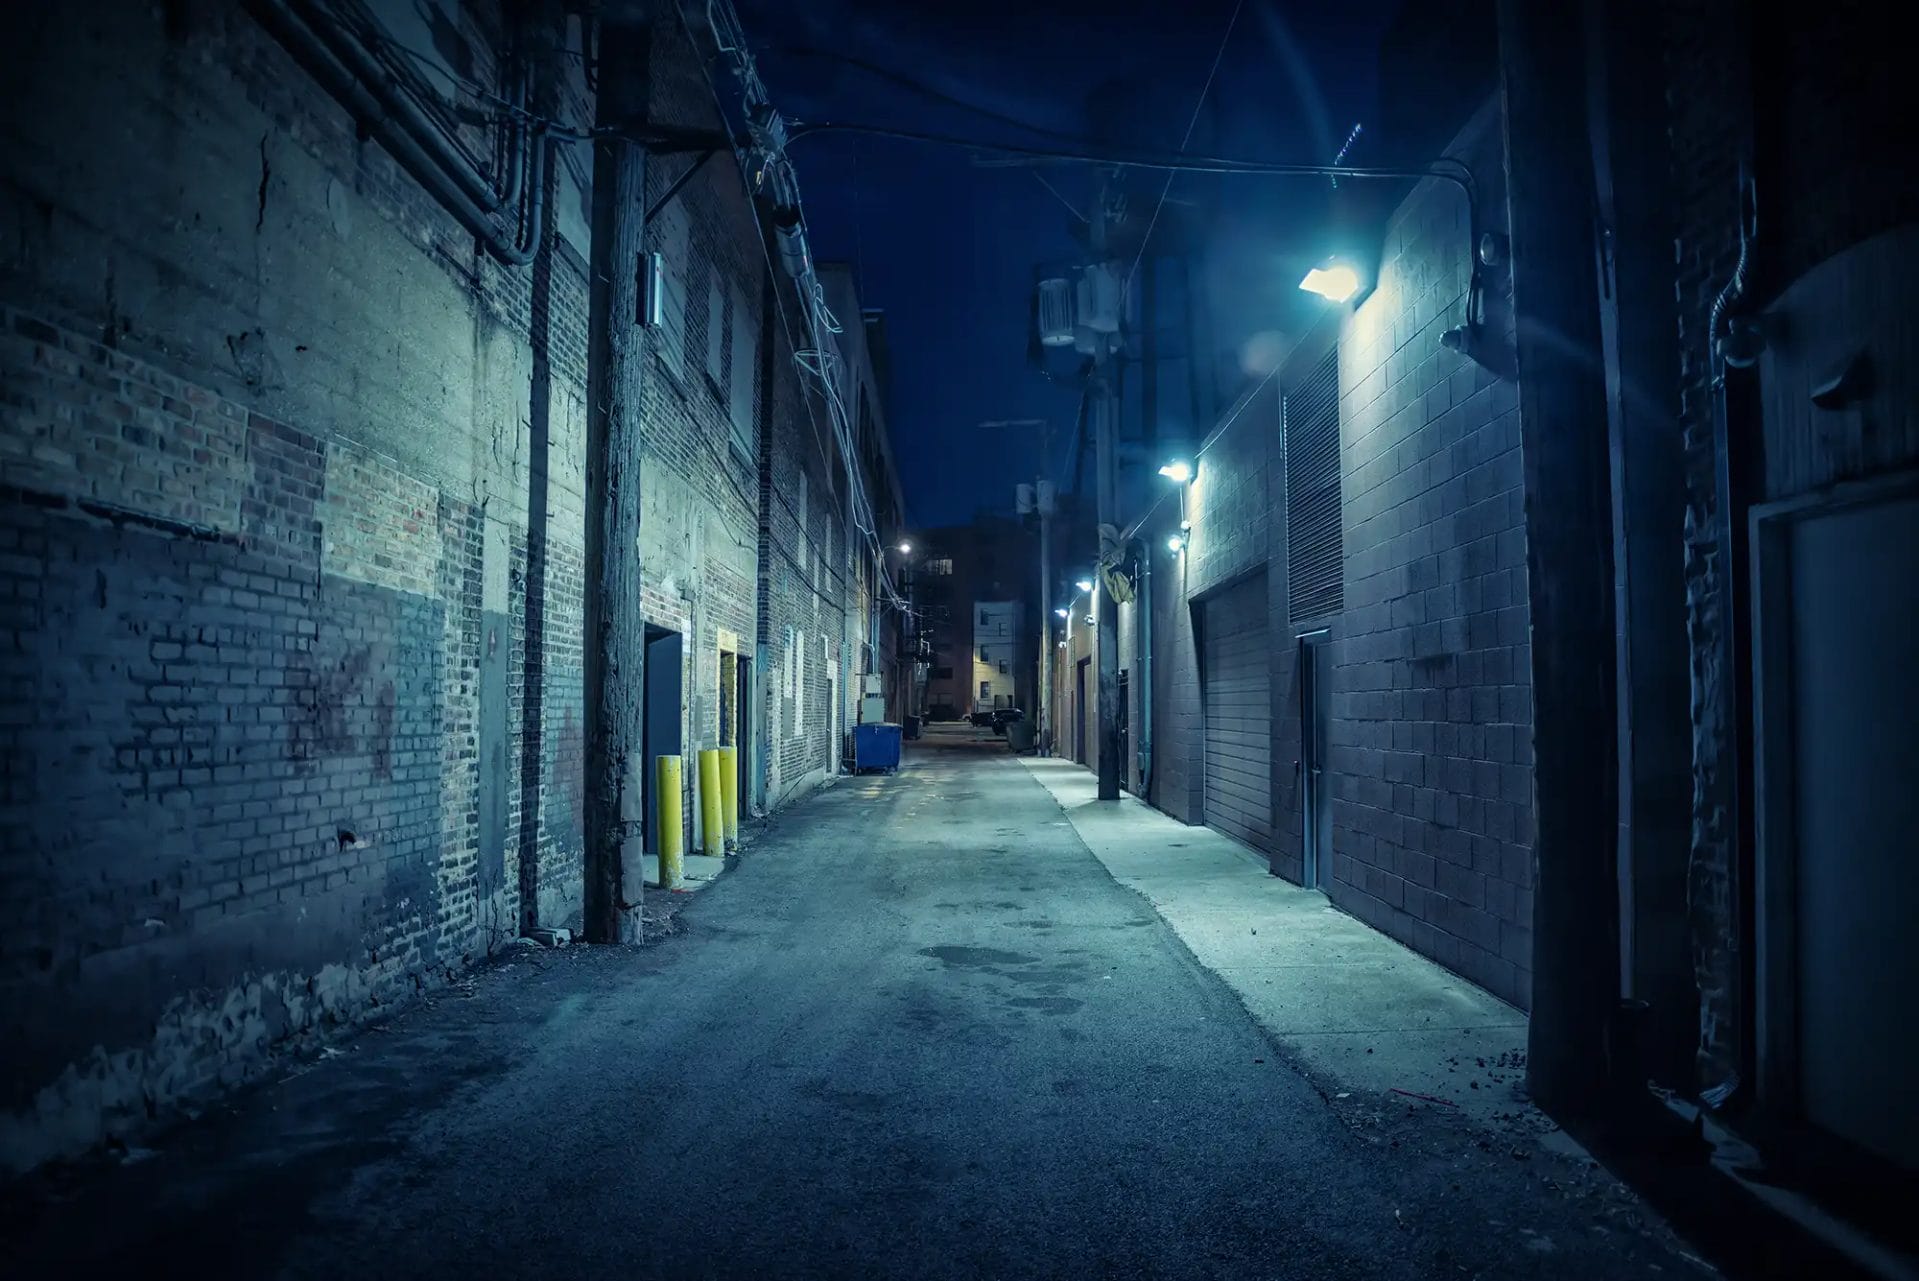 A dark alley street